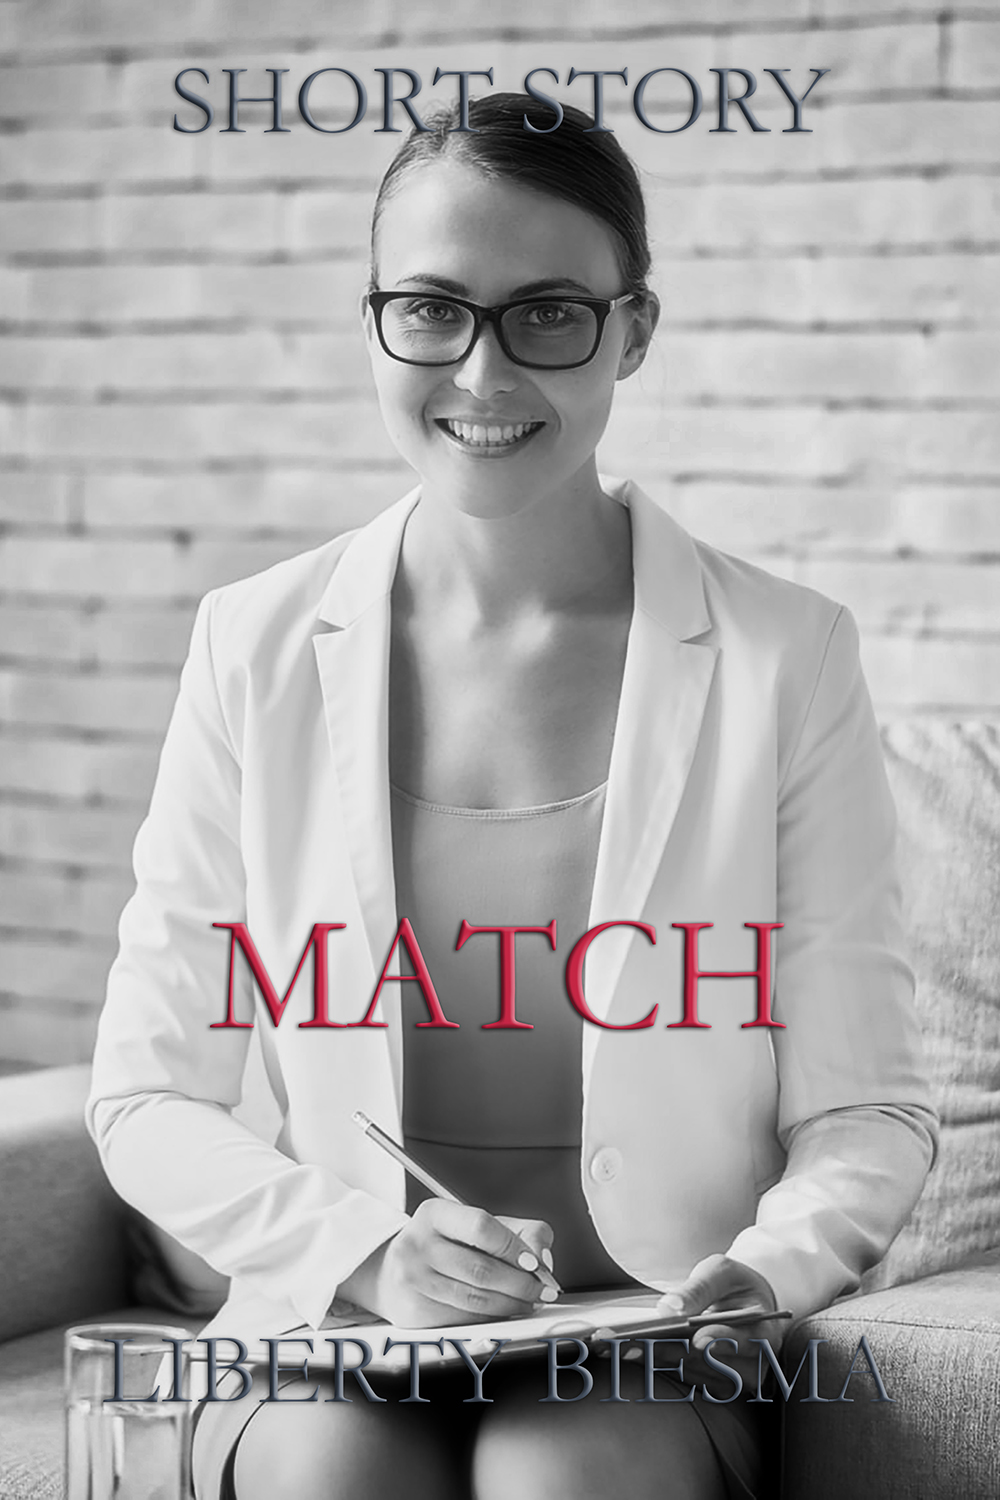 Match – A short story by Liberty Biesma